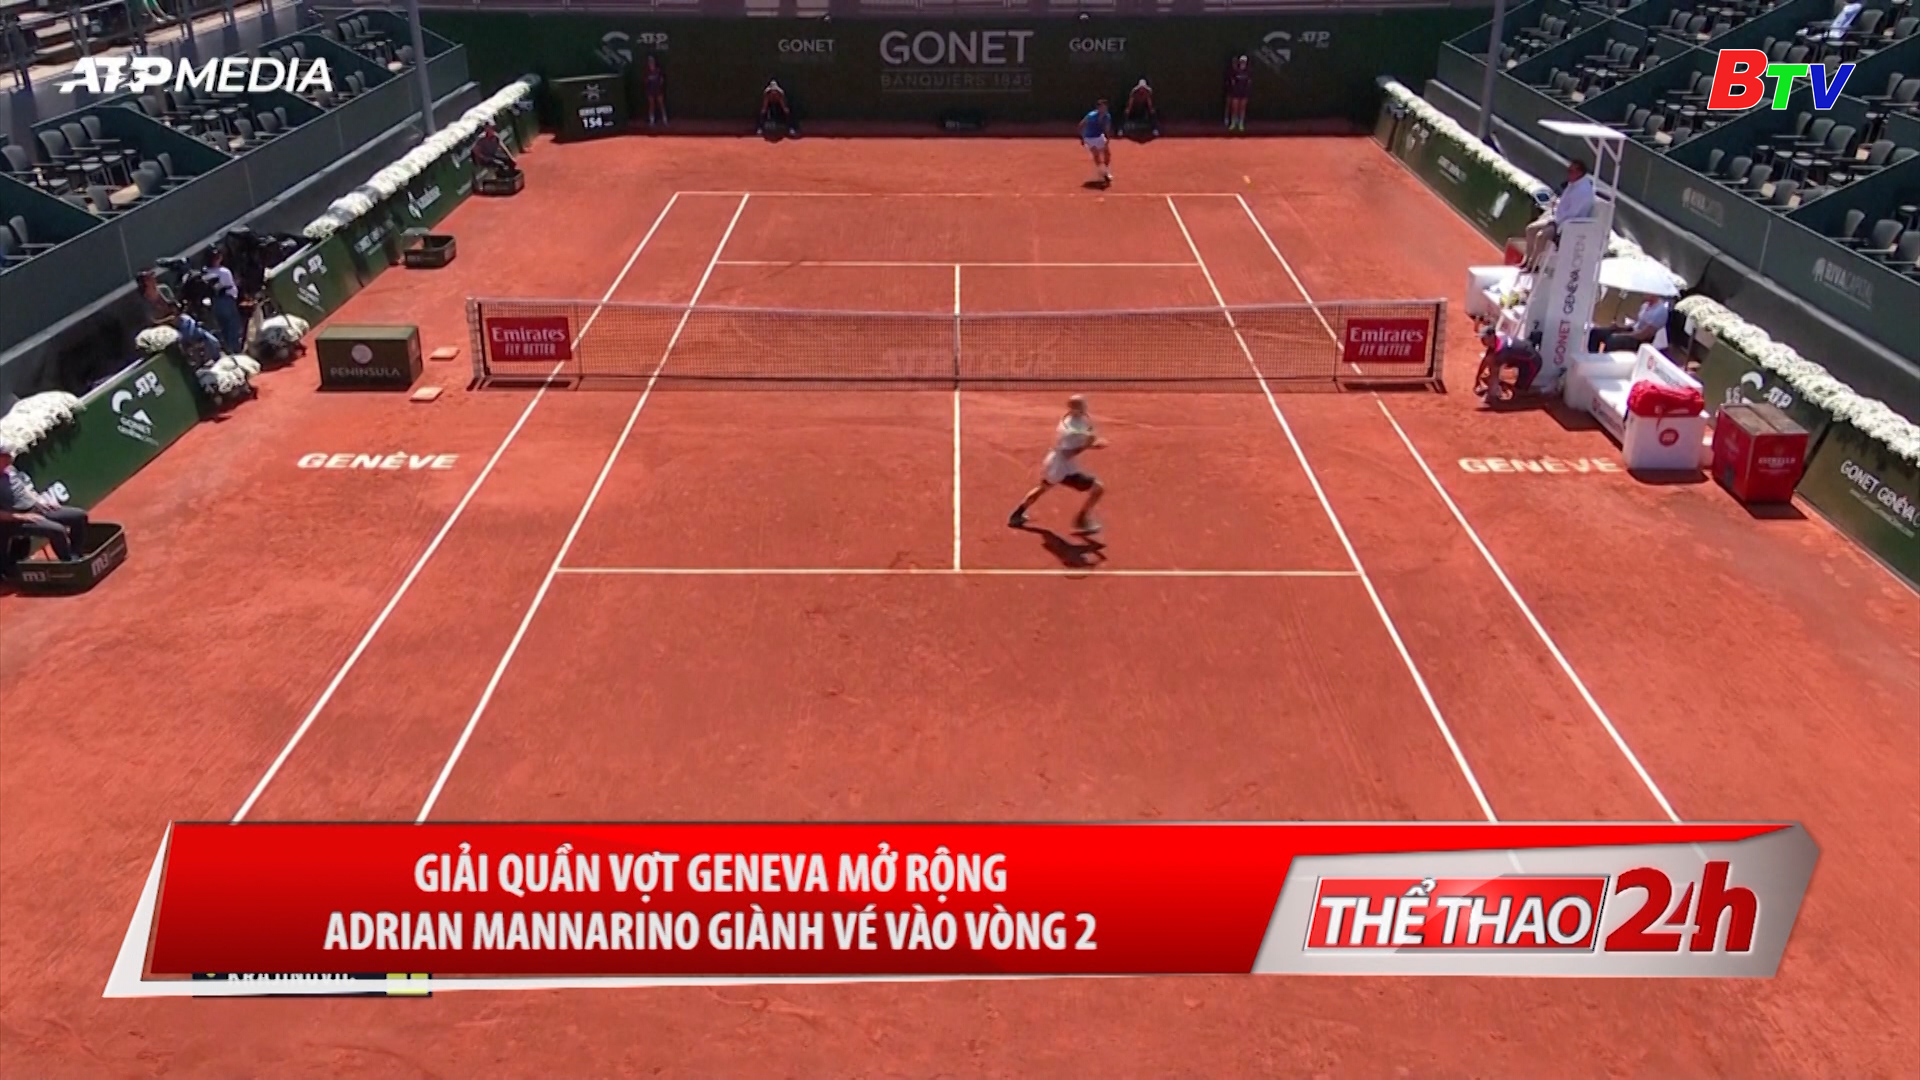 Giải quần vợt Geneva mở rộng – Adrian Mannarino giành vé vào vòng 2